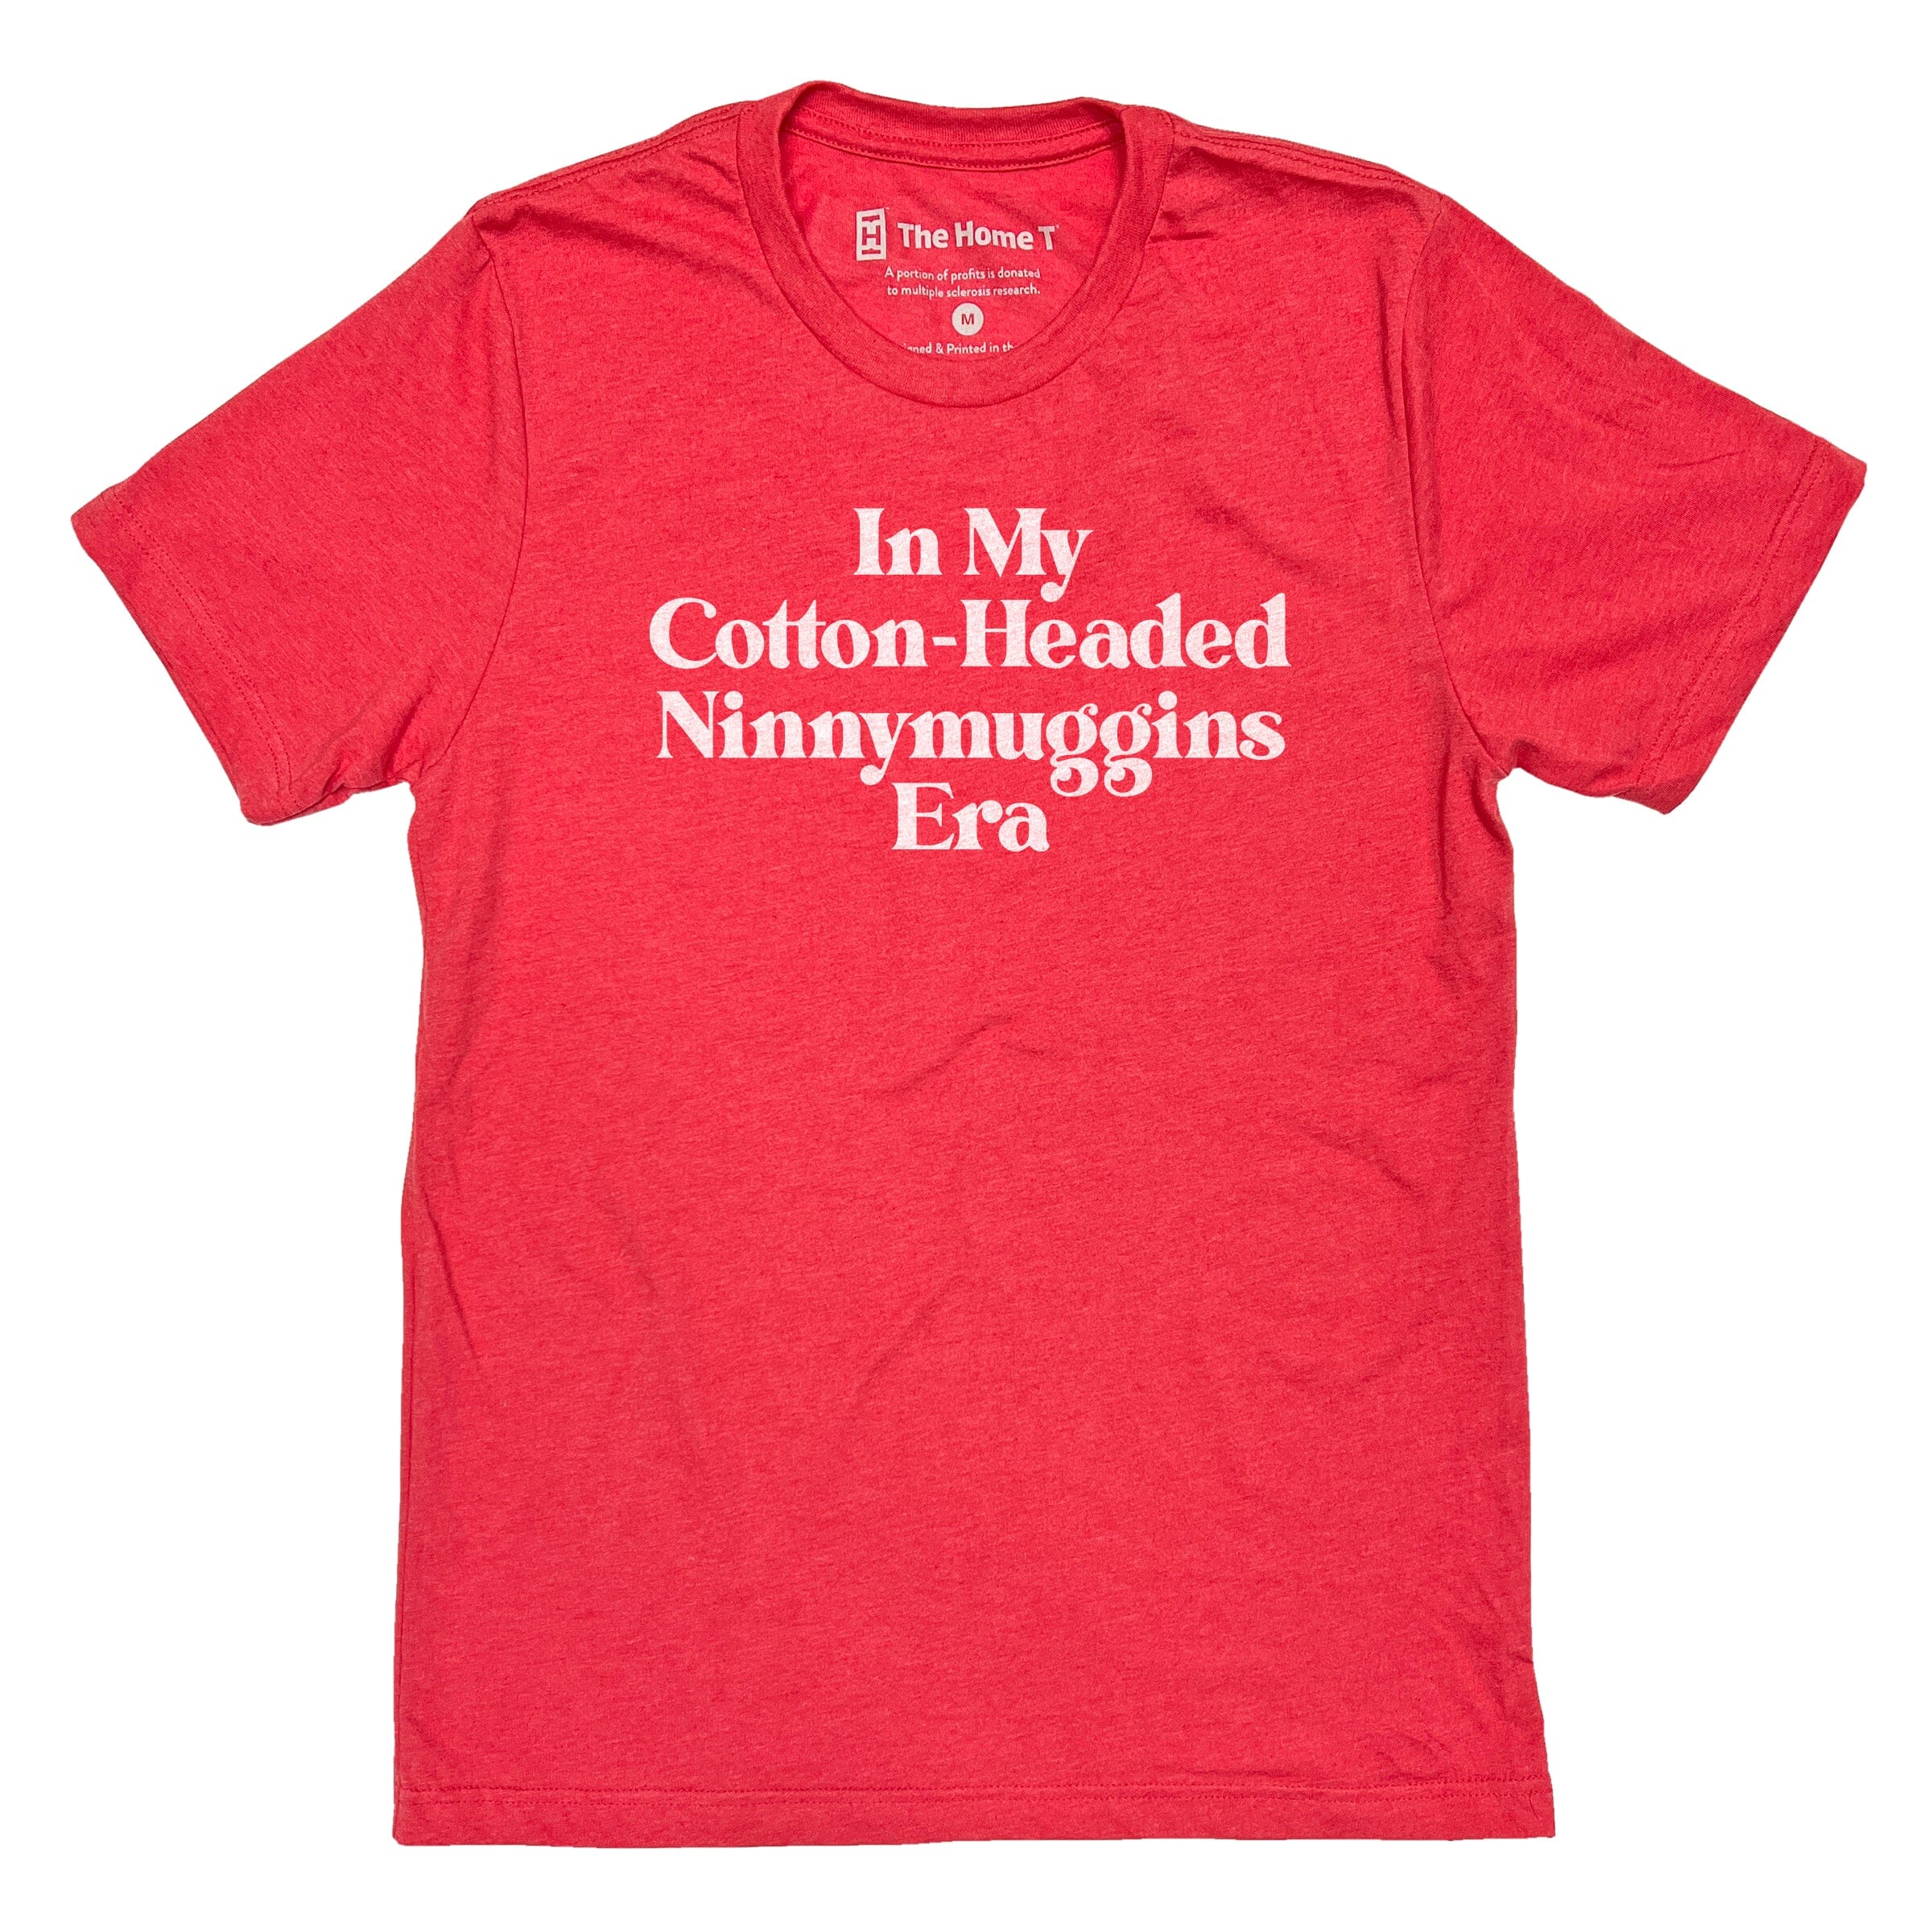 In My Cotton-Headed Ninnymuggins Era